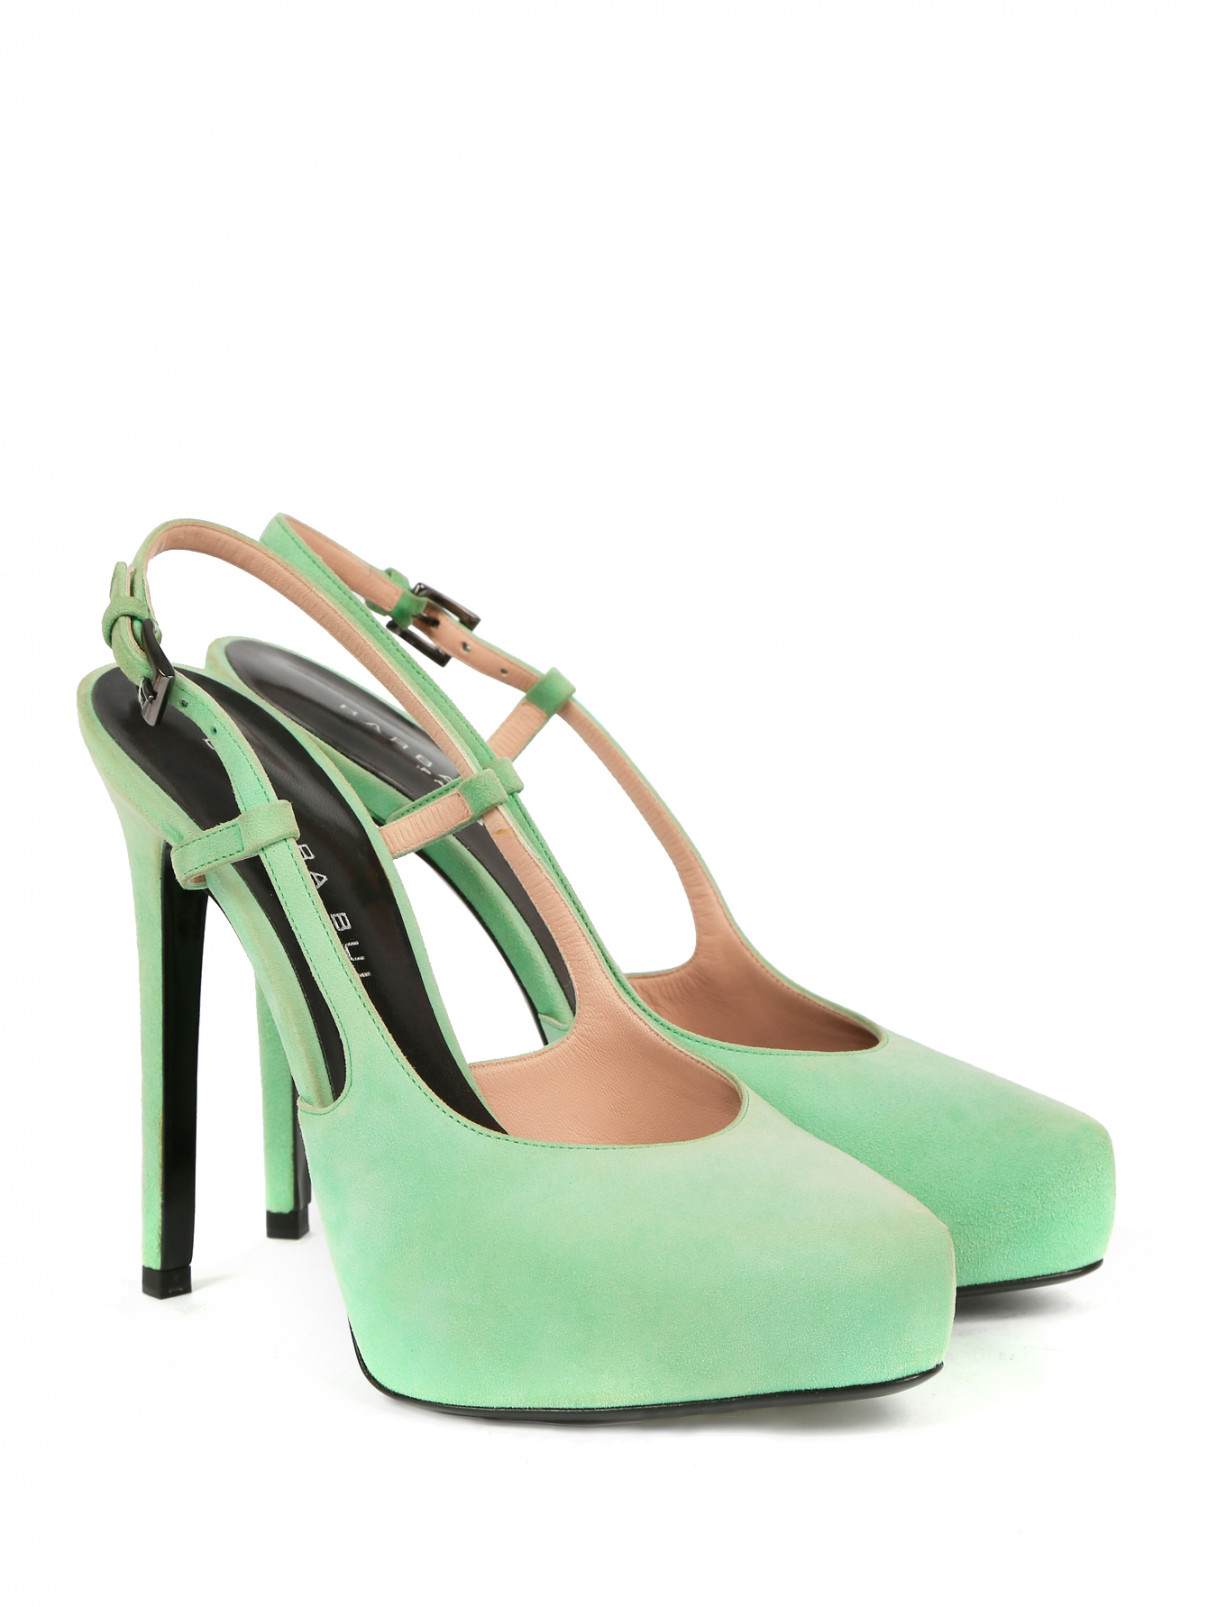 Босоножки из замши на высоком каблуке Barbara Bui  –  Общий вид  – Цвет:  Зеленый